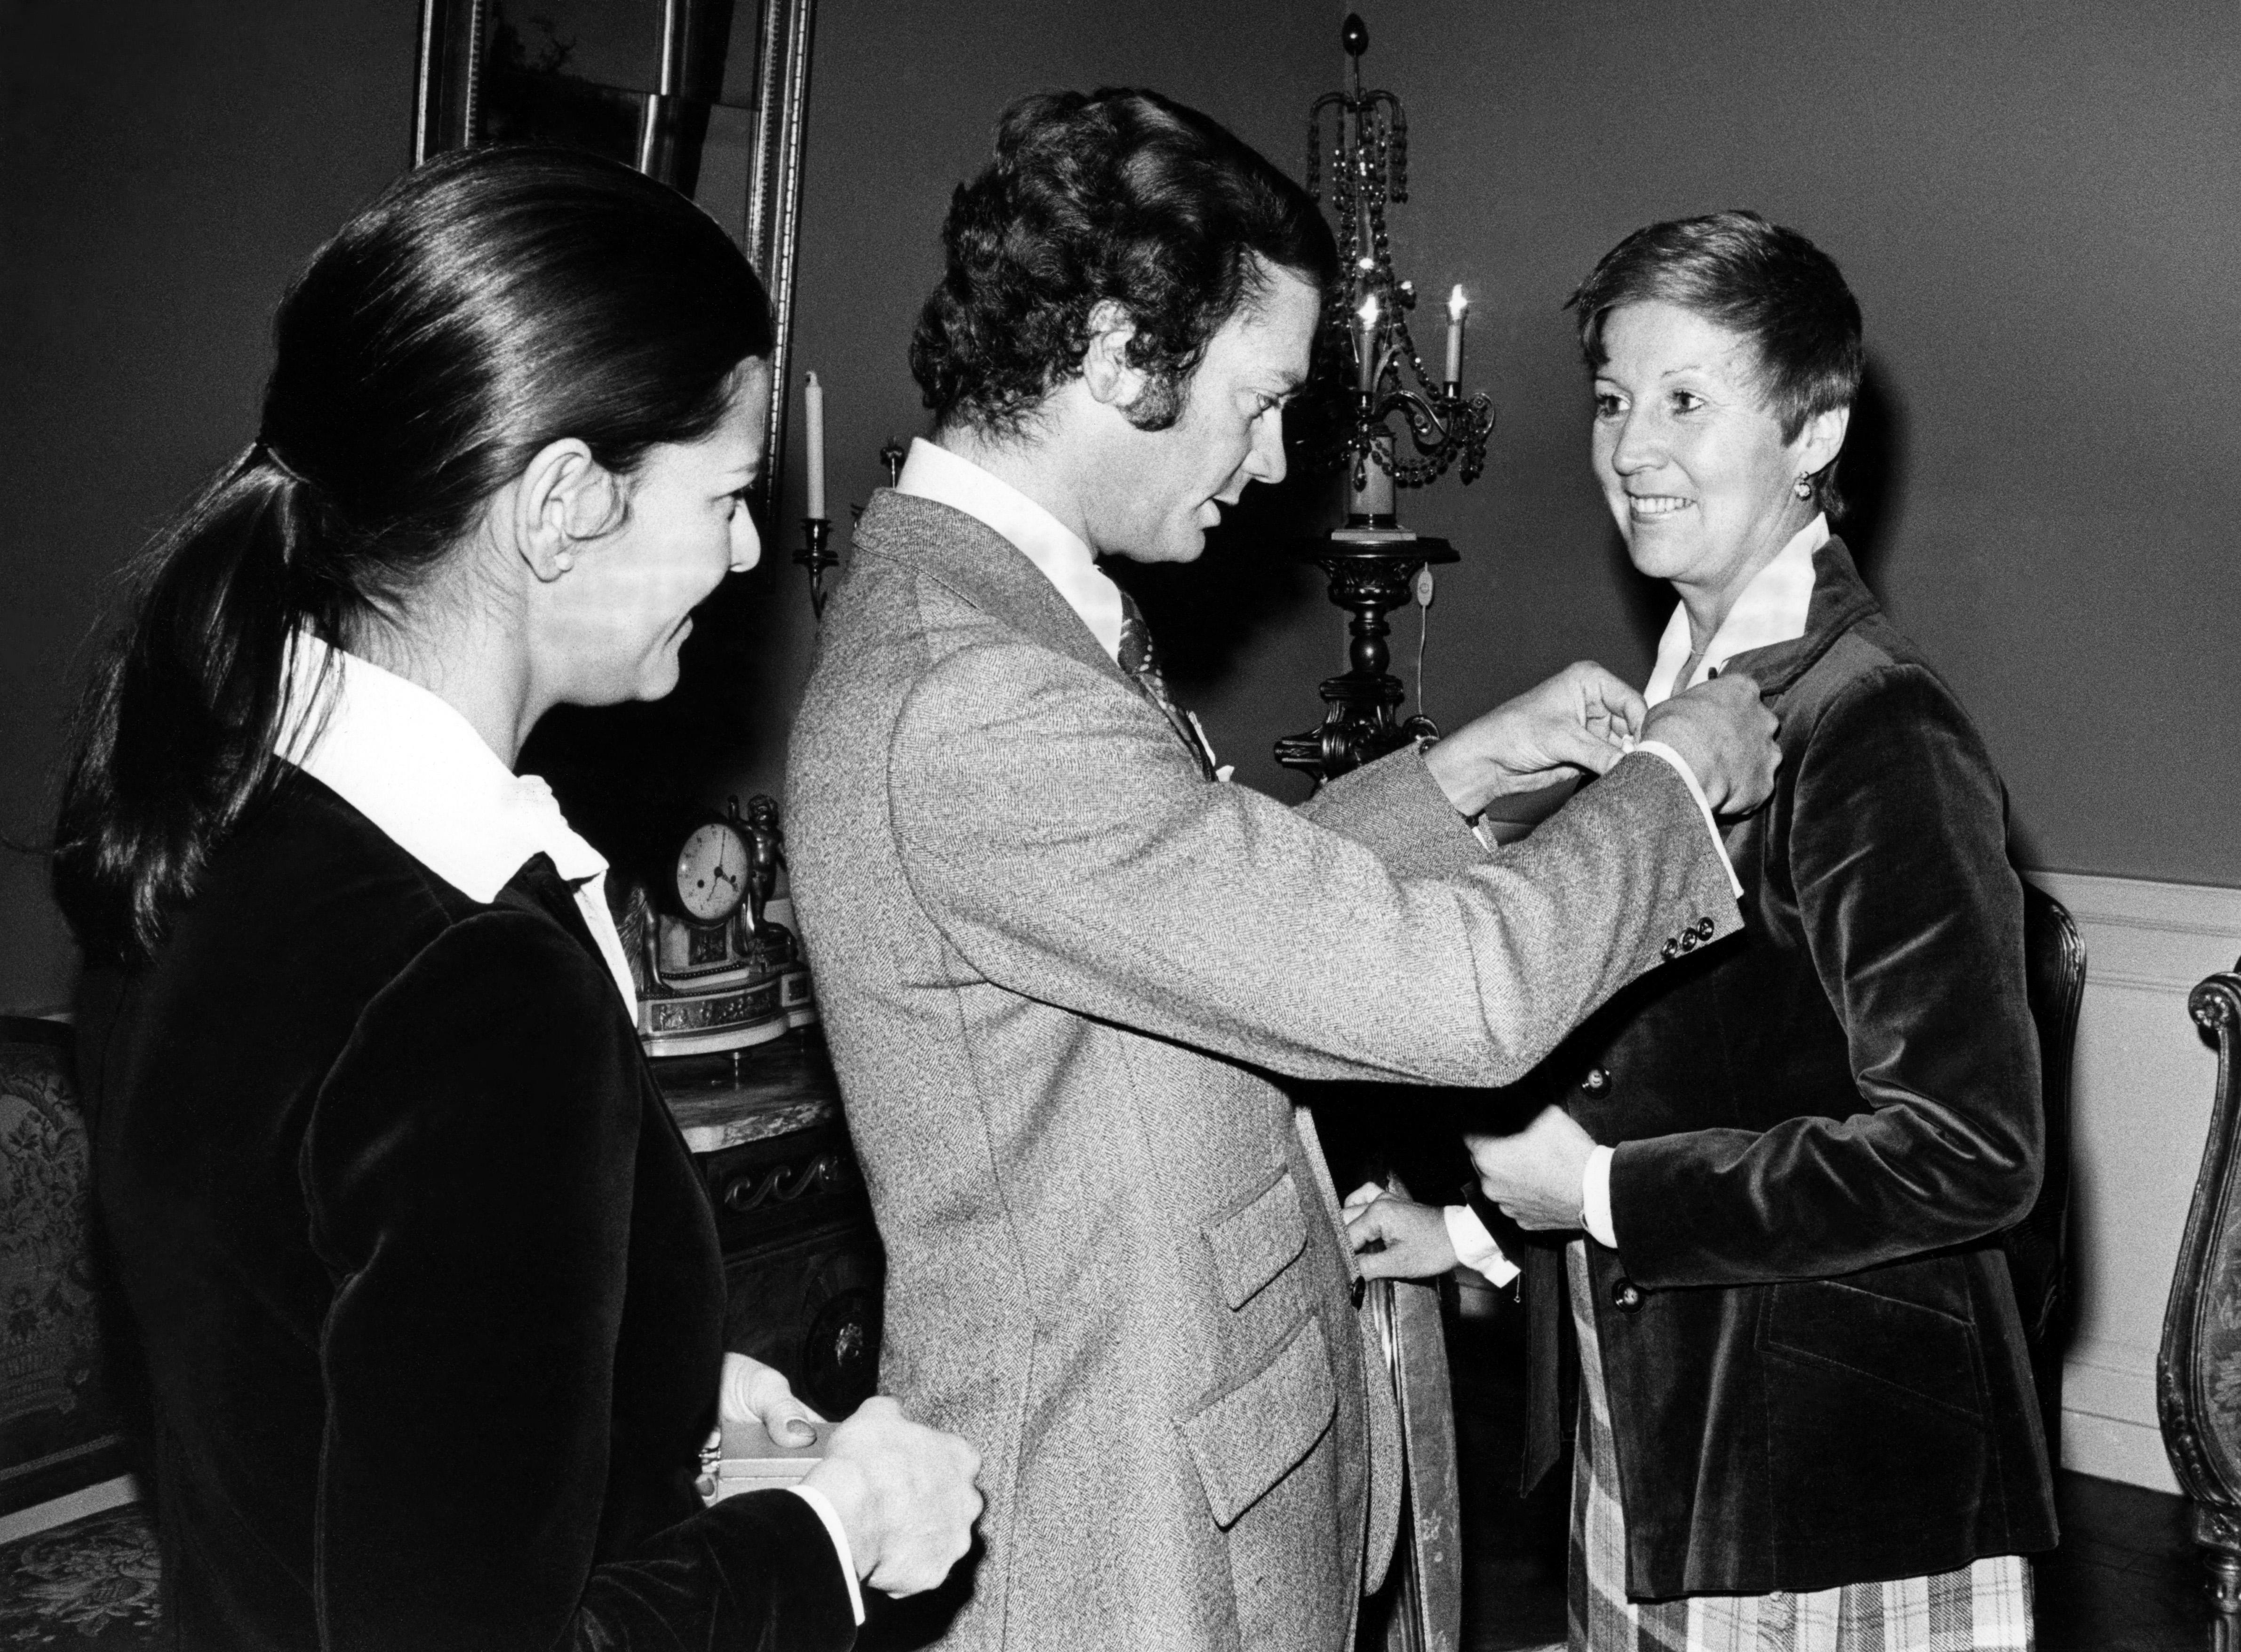 Jan Collsiöö/TT
Från vänster drottning Silvia, kung Carl Gustaf och operasångerskan Kjerstin Dellert som tar emot en medalj av kungen. Arkivbild.